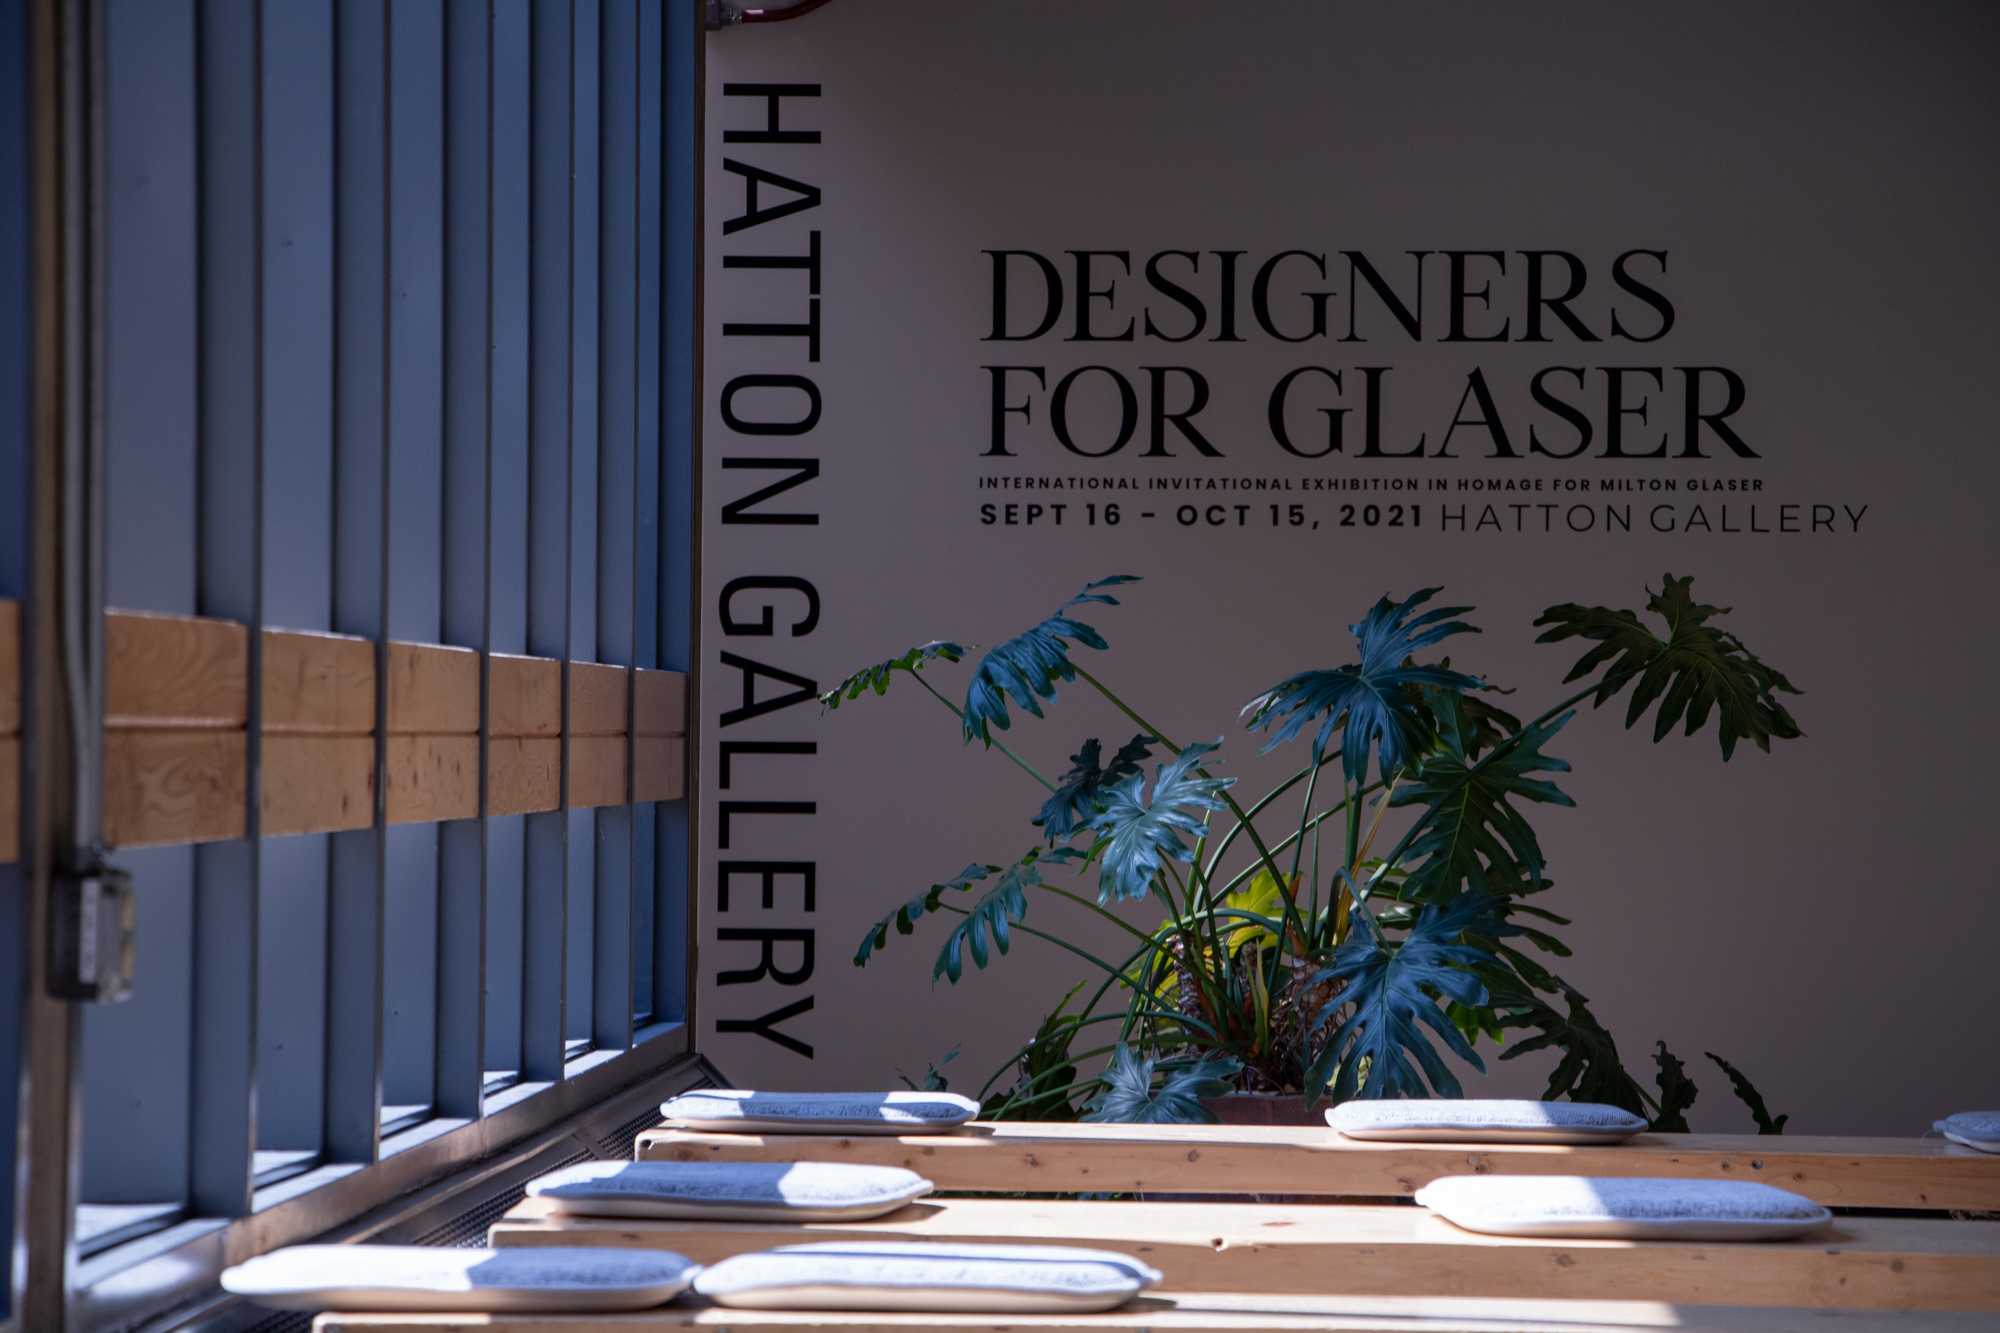 designers for glaser show sign